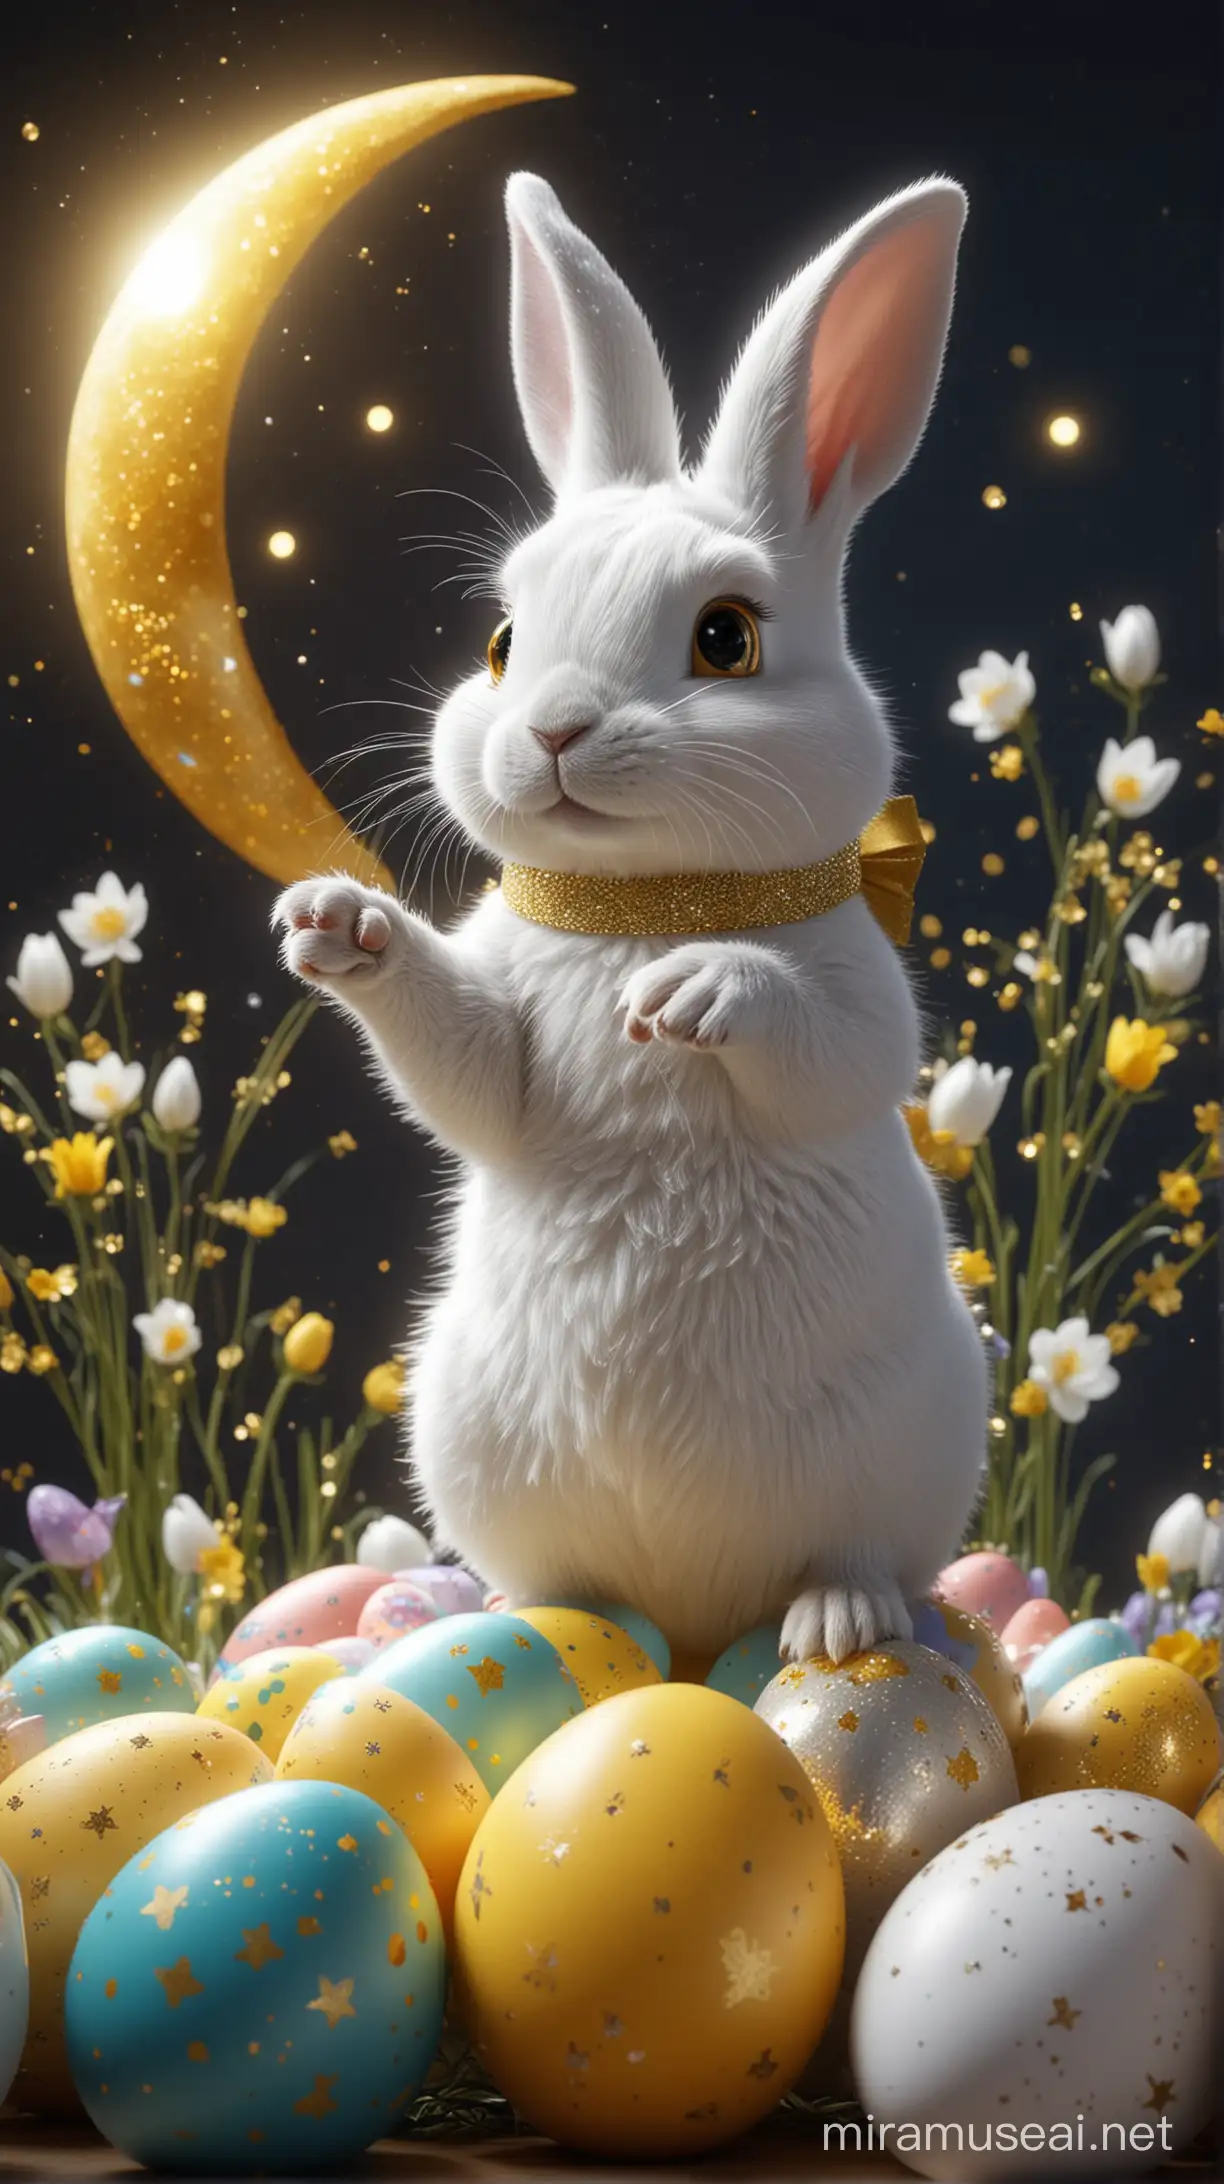 Glittering White Rabbit with Easter Eggs under Moonlight